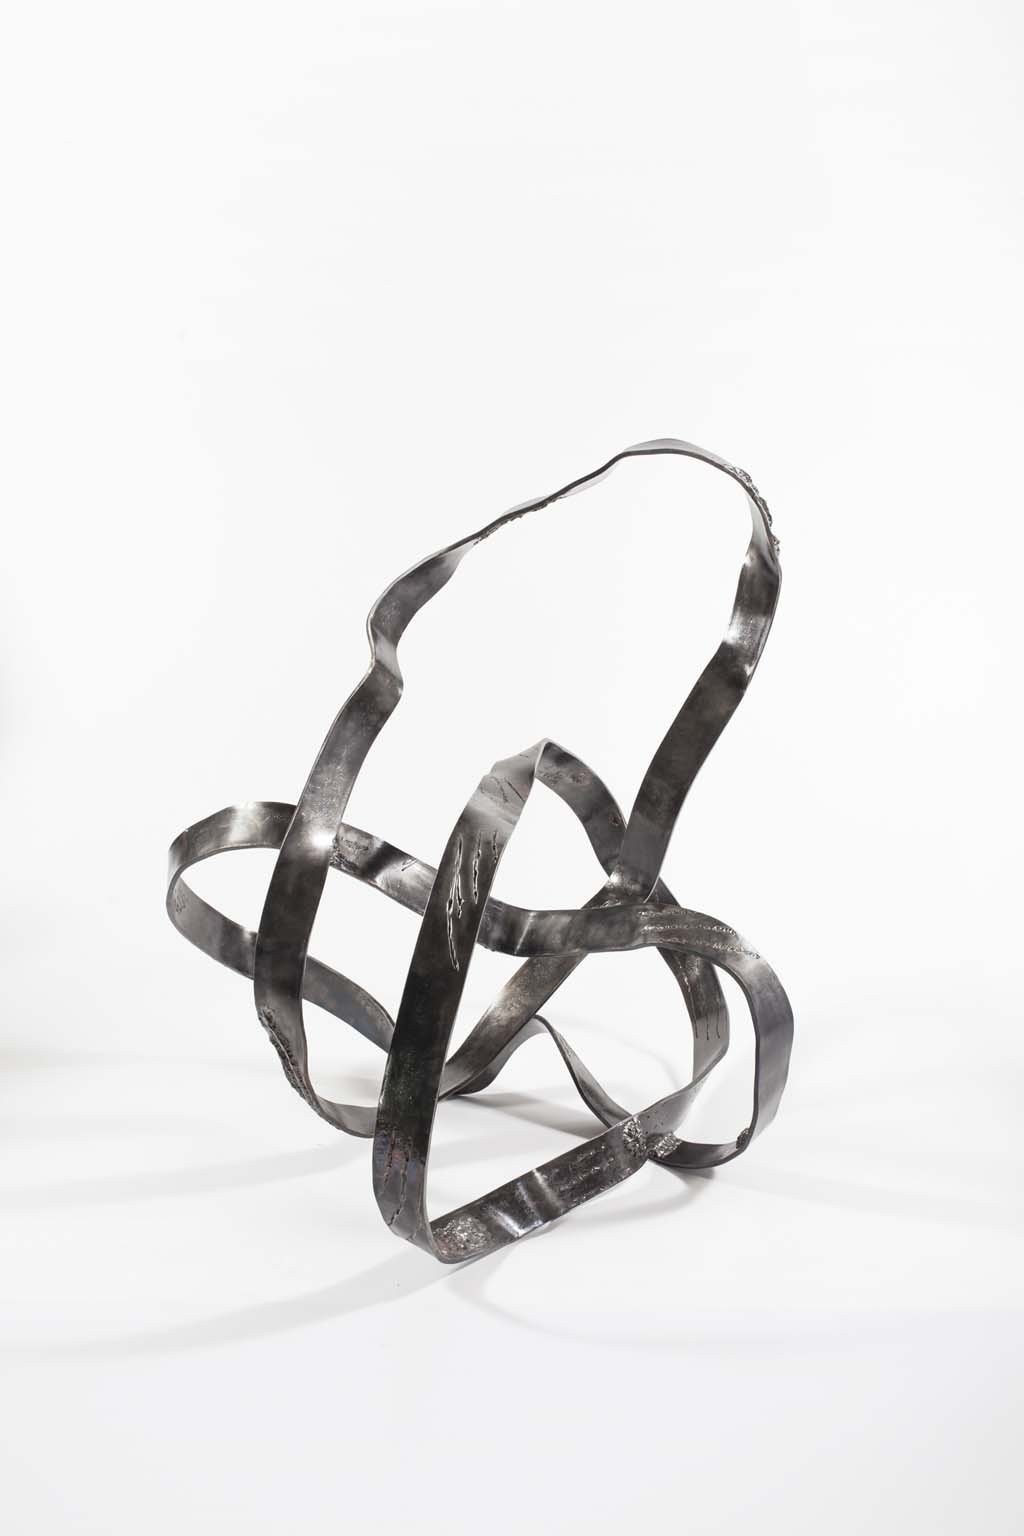 'Oblivion IIi ' | Iron and brass sculpture | Artist: Rami Ater